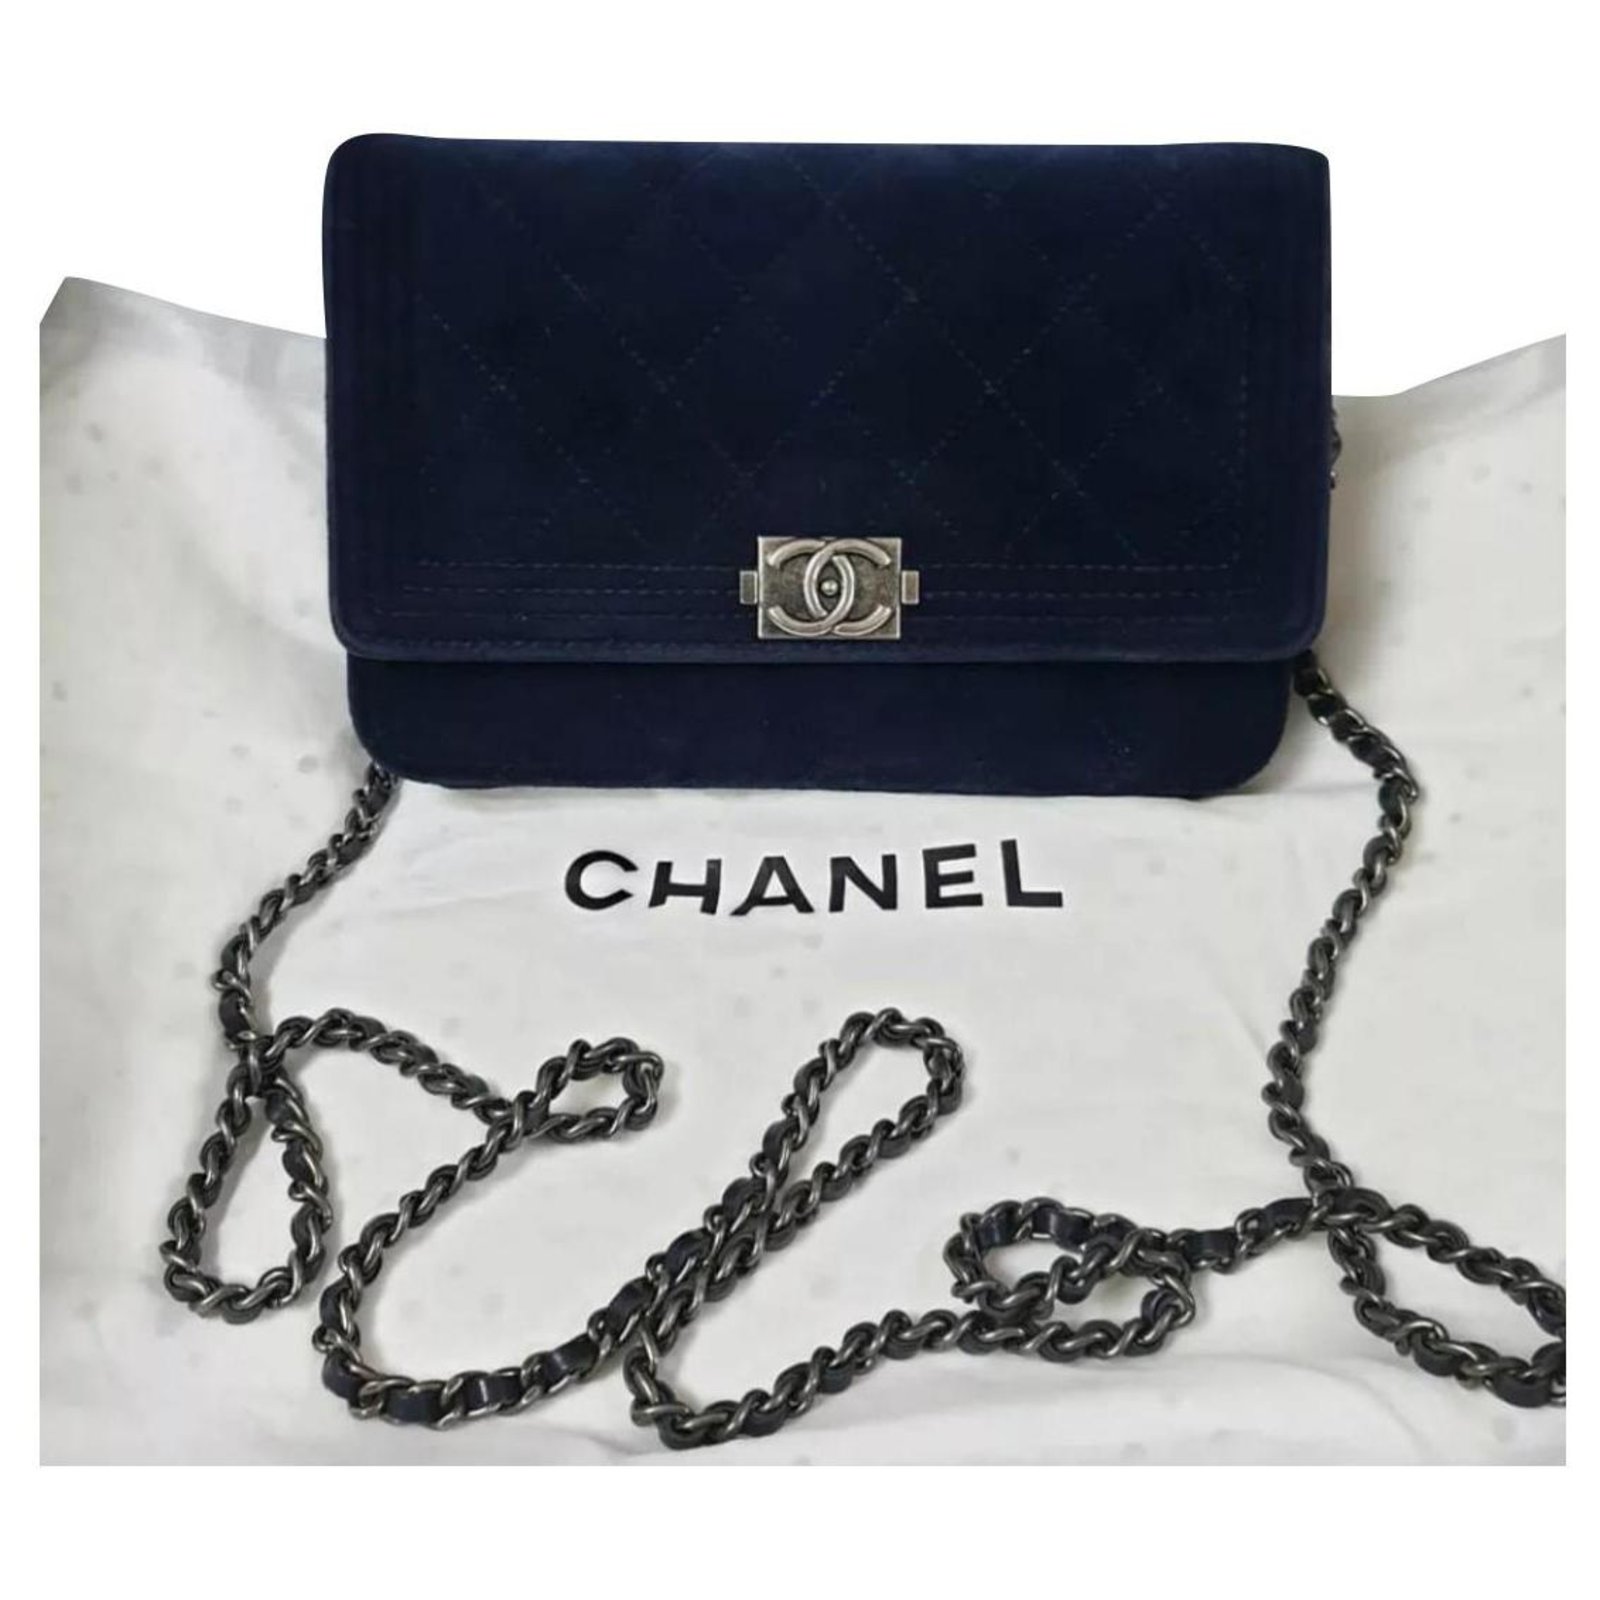 Wallet on chain boy velvet crossbody bag Chanel Purple in Velvet